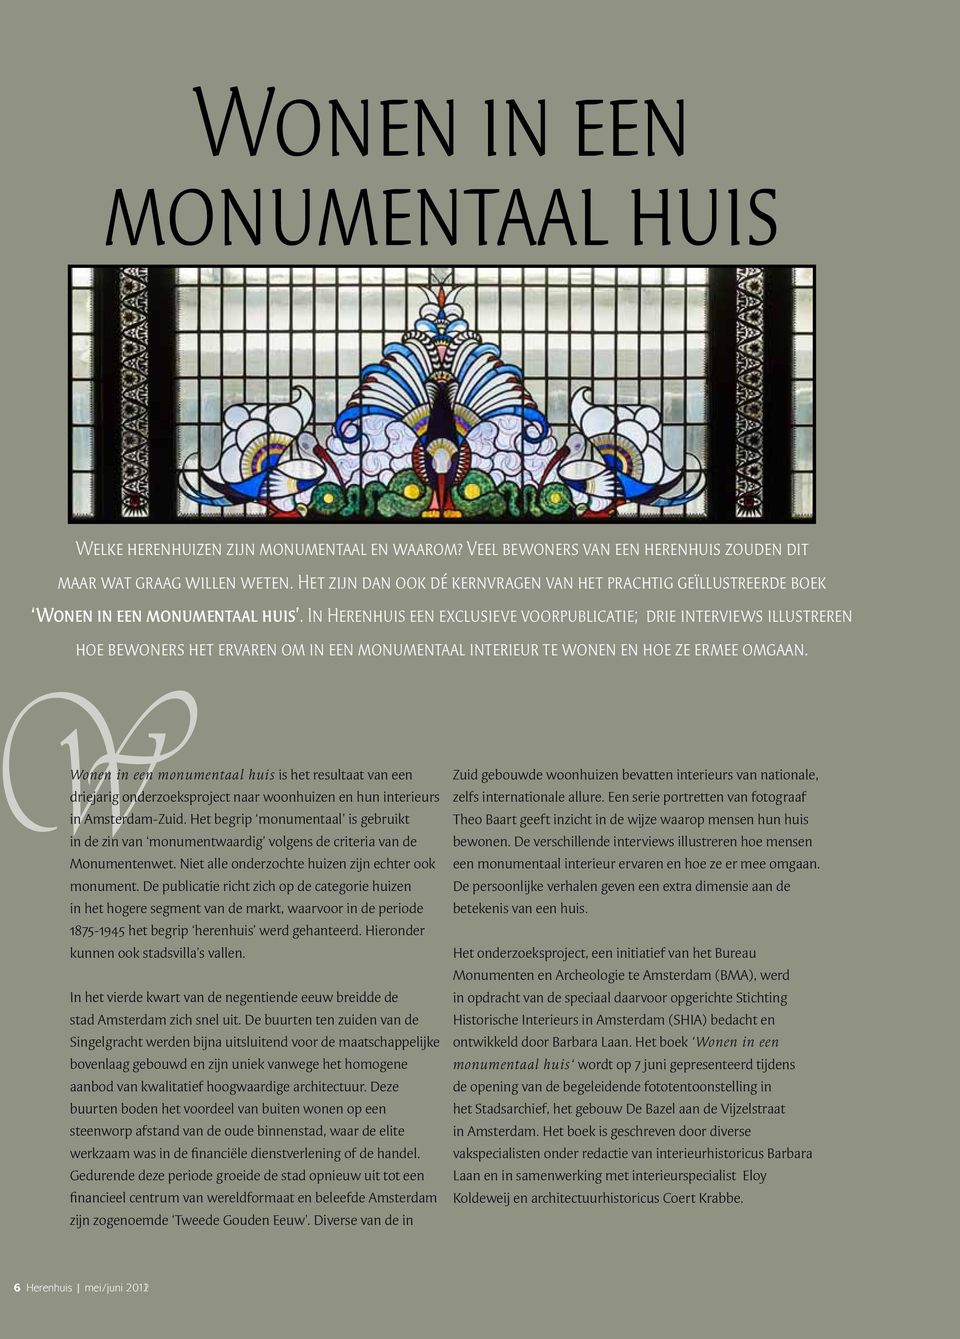 In Herenhuis een exclusieve voorpublicatie; drie interviews illustreren hoe bewoners het ervaren om in een monumentaal interieur te wonen en hoe ze ermee omgaan.